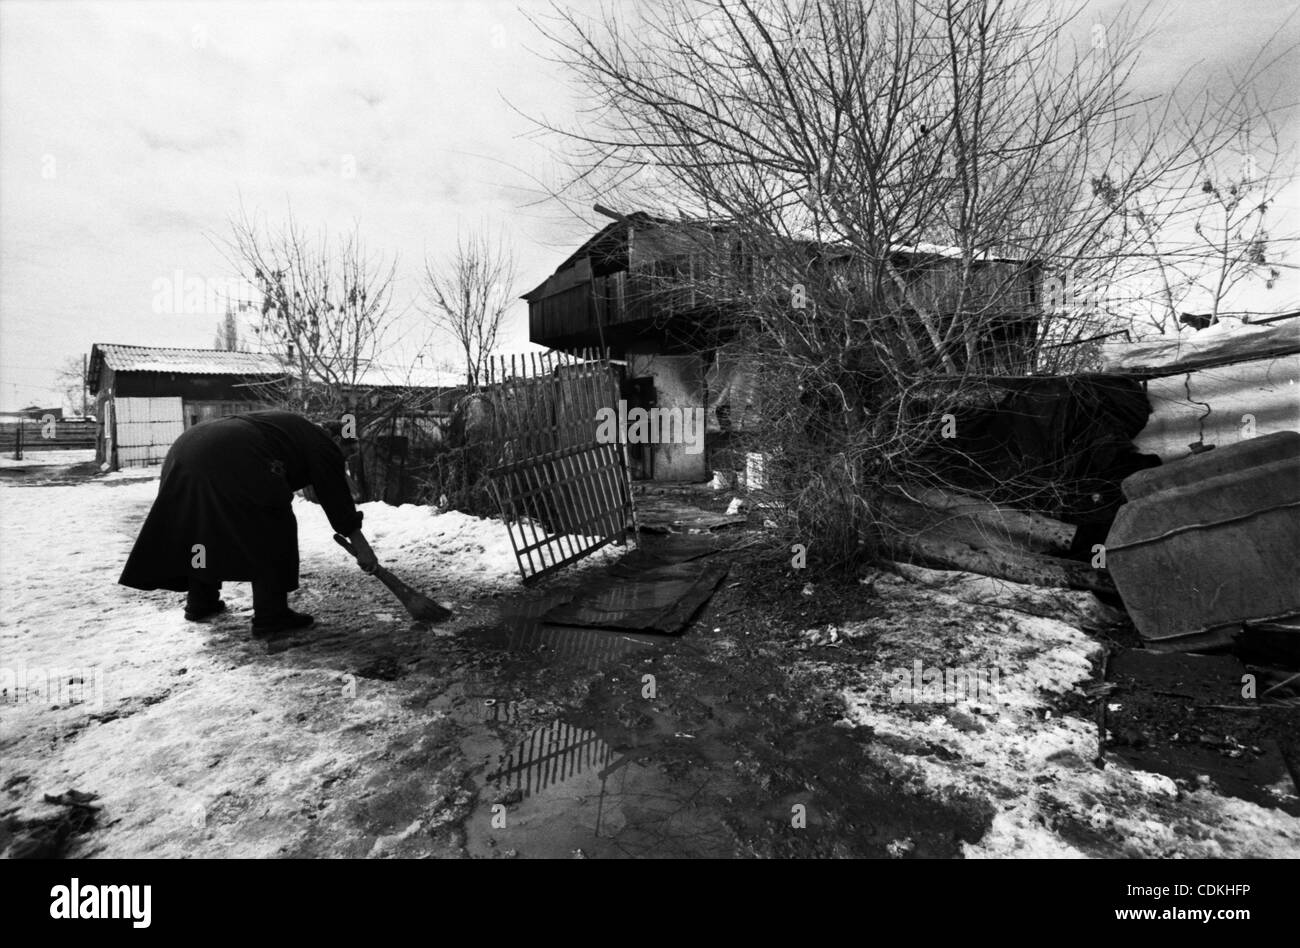 La gente vive en los contenedores, después de 23 años. Asia, Armenia, Gyumri, 06.03.2011: de Gyumri (ex Leninakan) sufridos por el terremoto de diciembre 7, 1988. El epicentro del terremoto fue en la ciudad de Spitak, matando a 25.000 personas. En Gyumri más de 20.000 apartamentos y casas privadas fueron arruinadas y Foto de stock